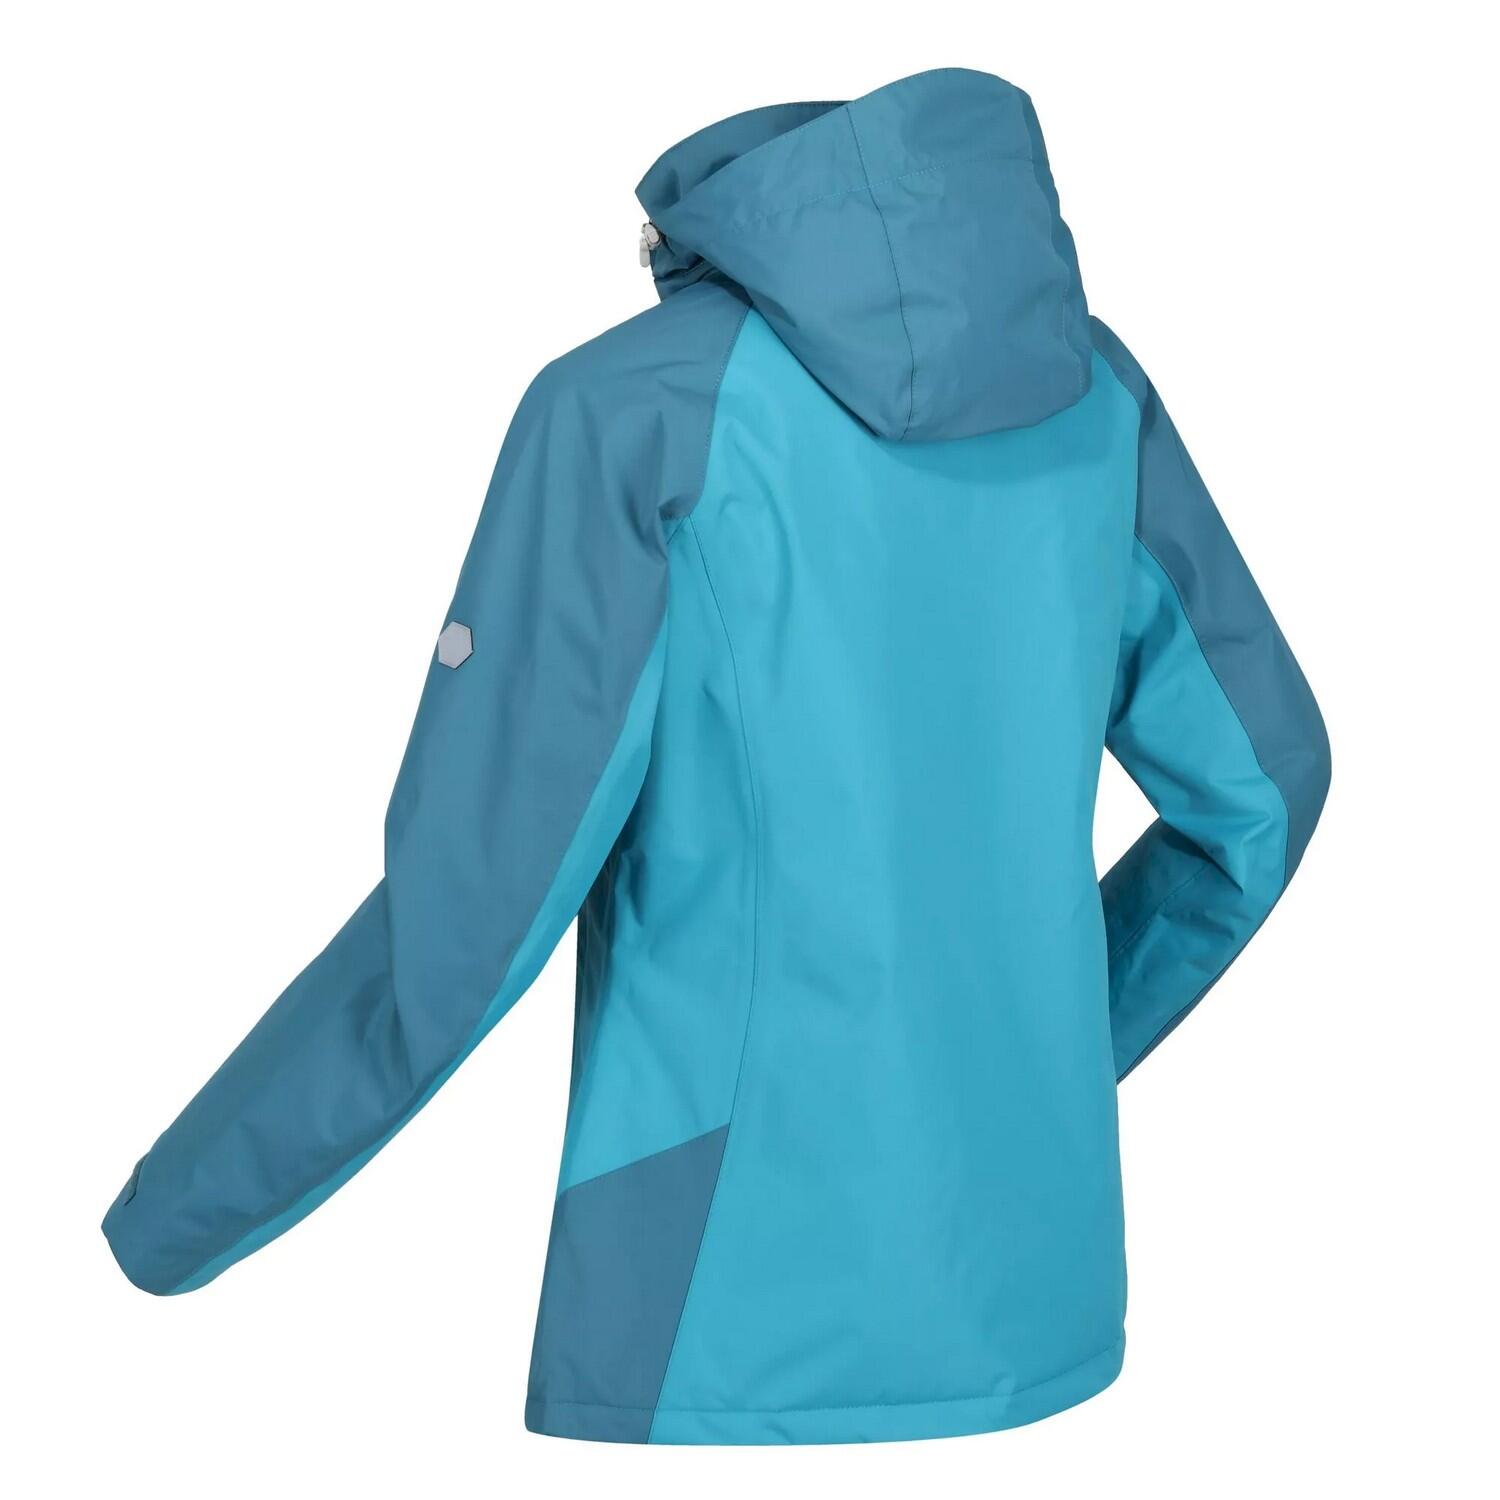 Womens/Ladies Calderdale Winter Waterproof Jacket (Pagoda Blue/Dragonfly) 4/5